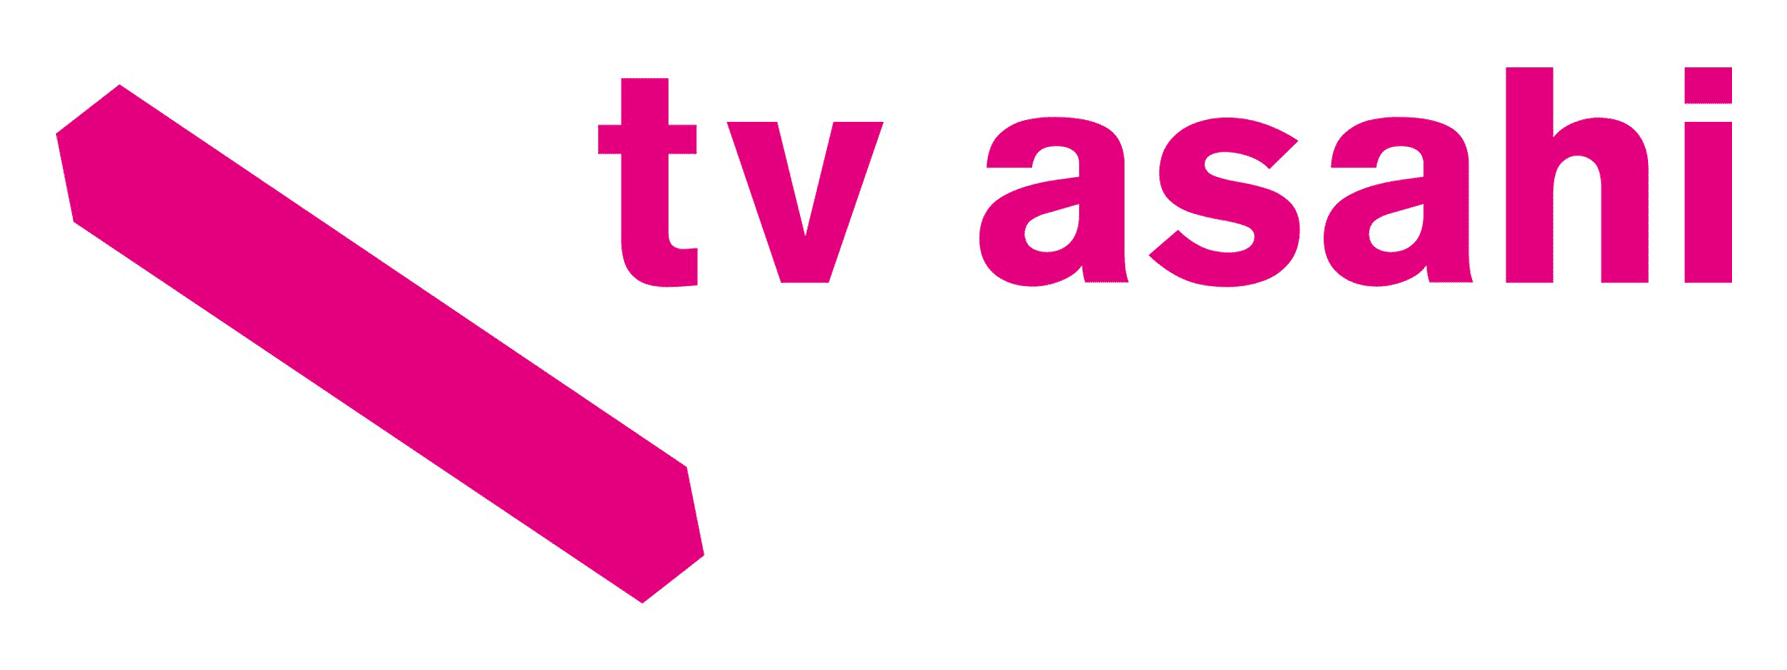 TV Asahi Brings Out Drama & Formats from Japan